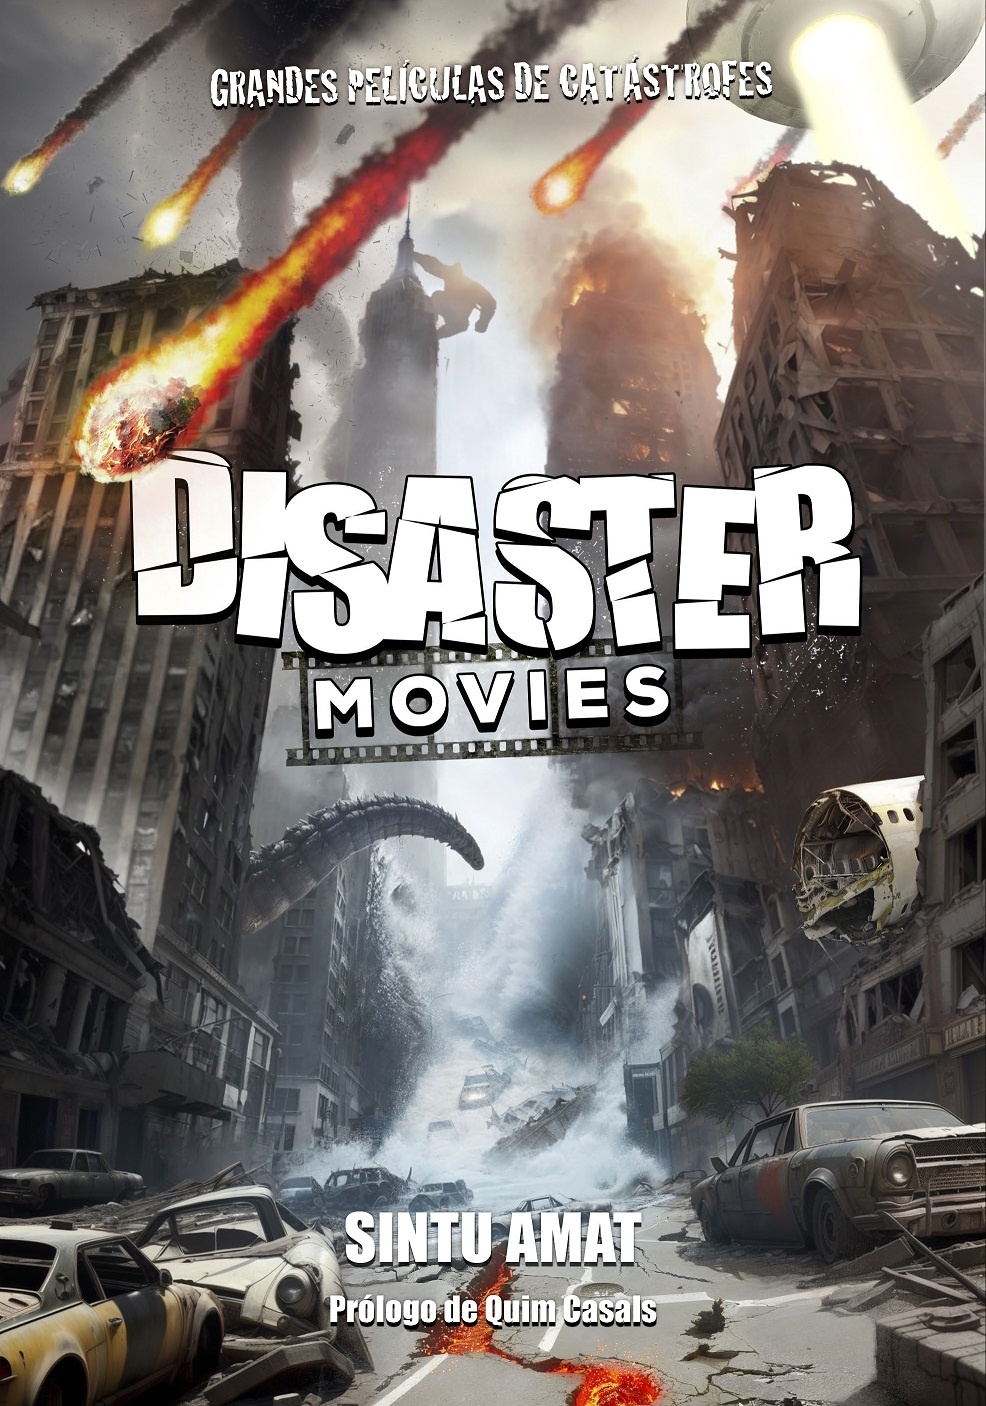 Disaster Movies. Grandes películas de catástrofes. 